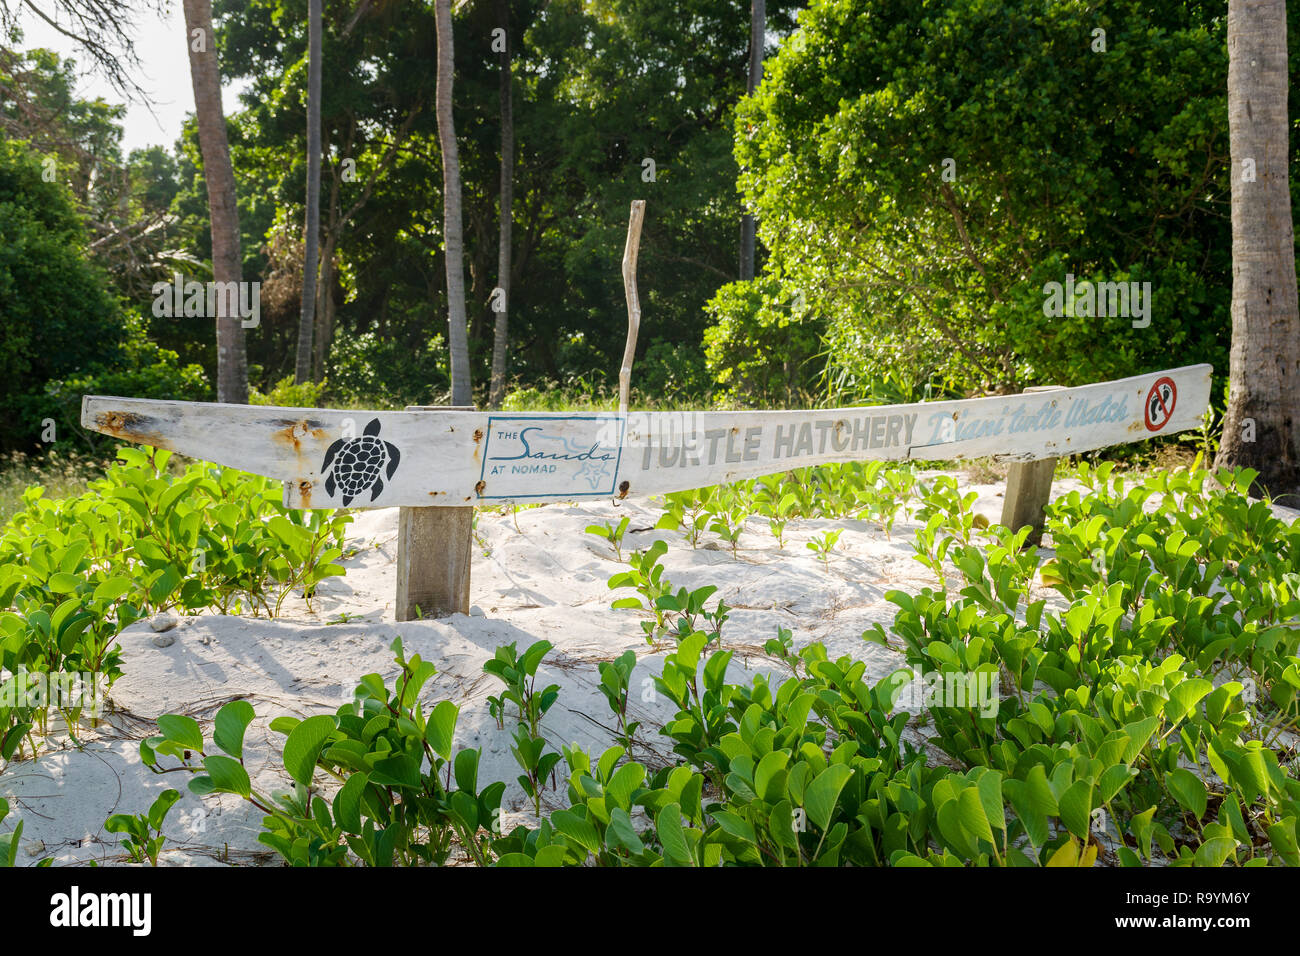 Un segno per il Turtle Hatchery presso la spiaggia di Diani con informazioni sulle tartarughe, Diani, Kenya Foto Stock